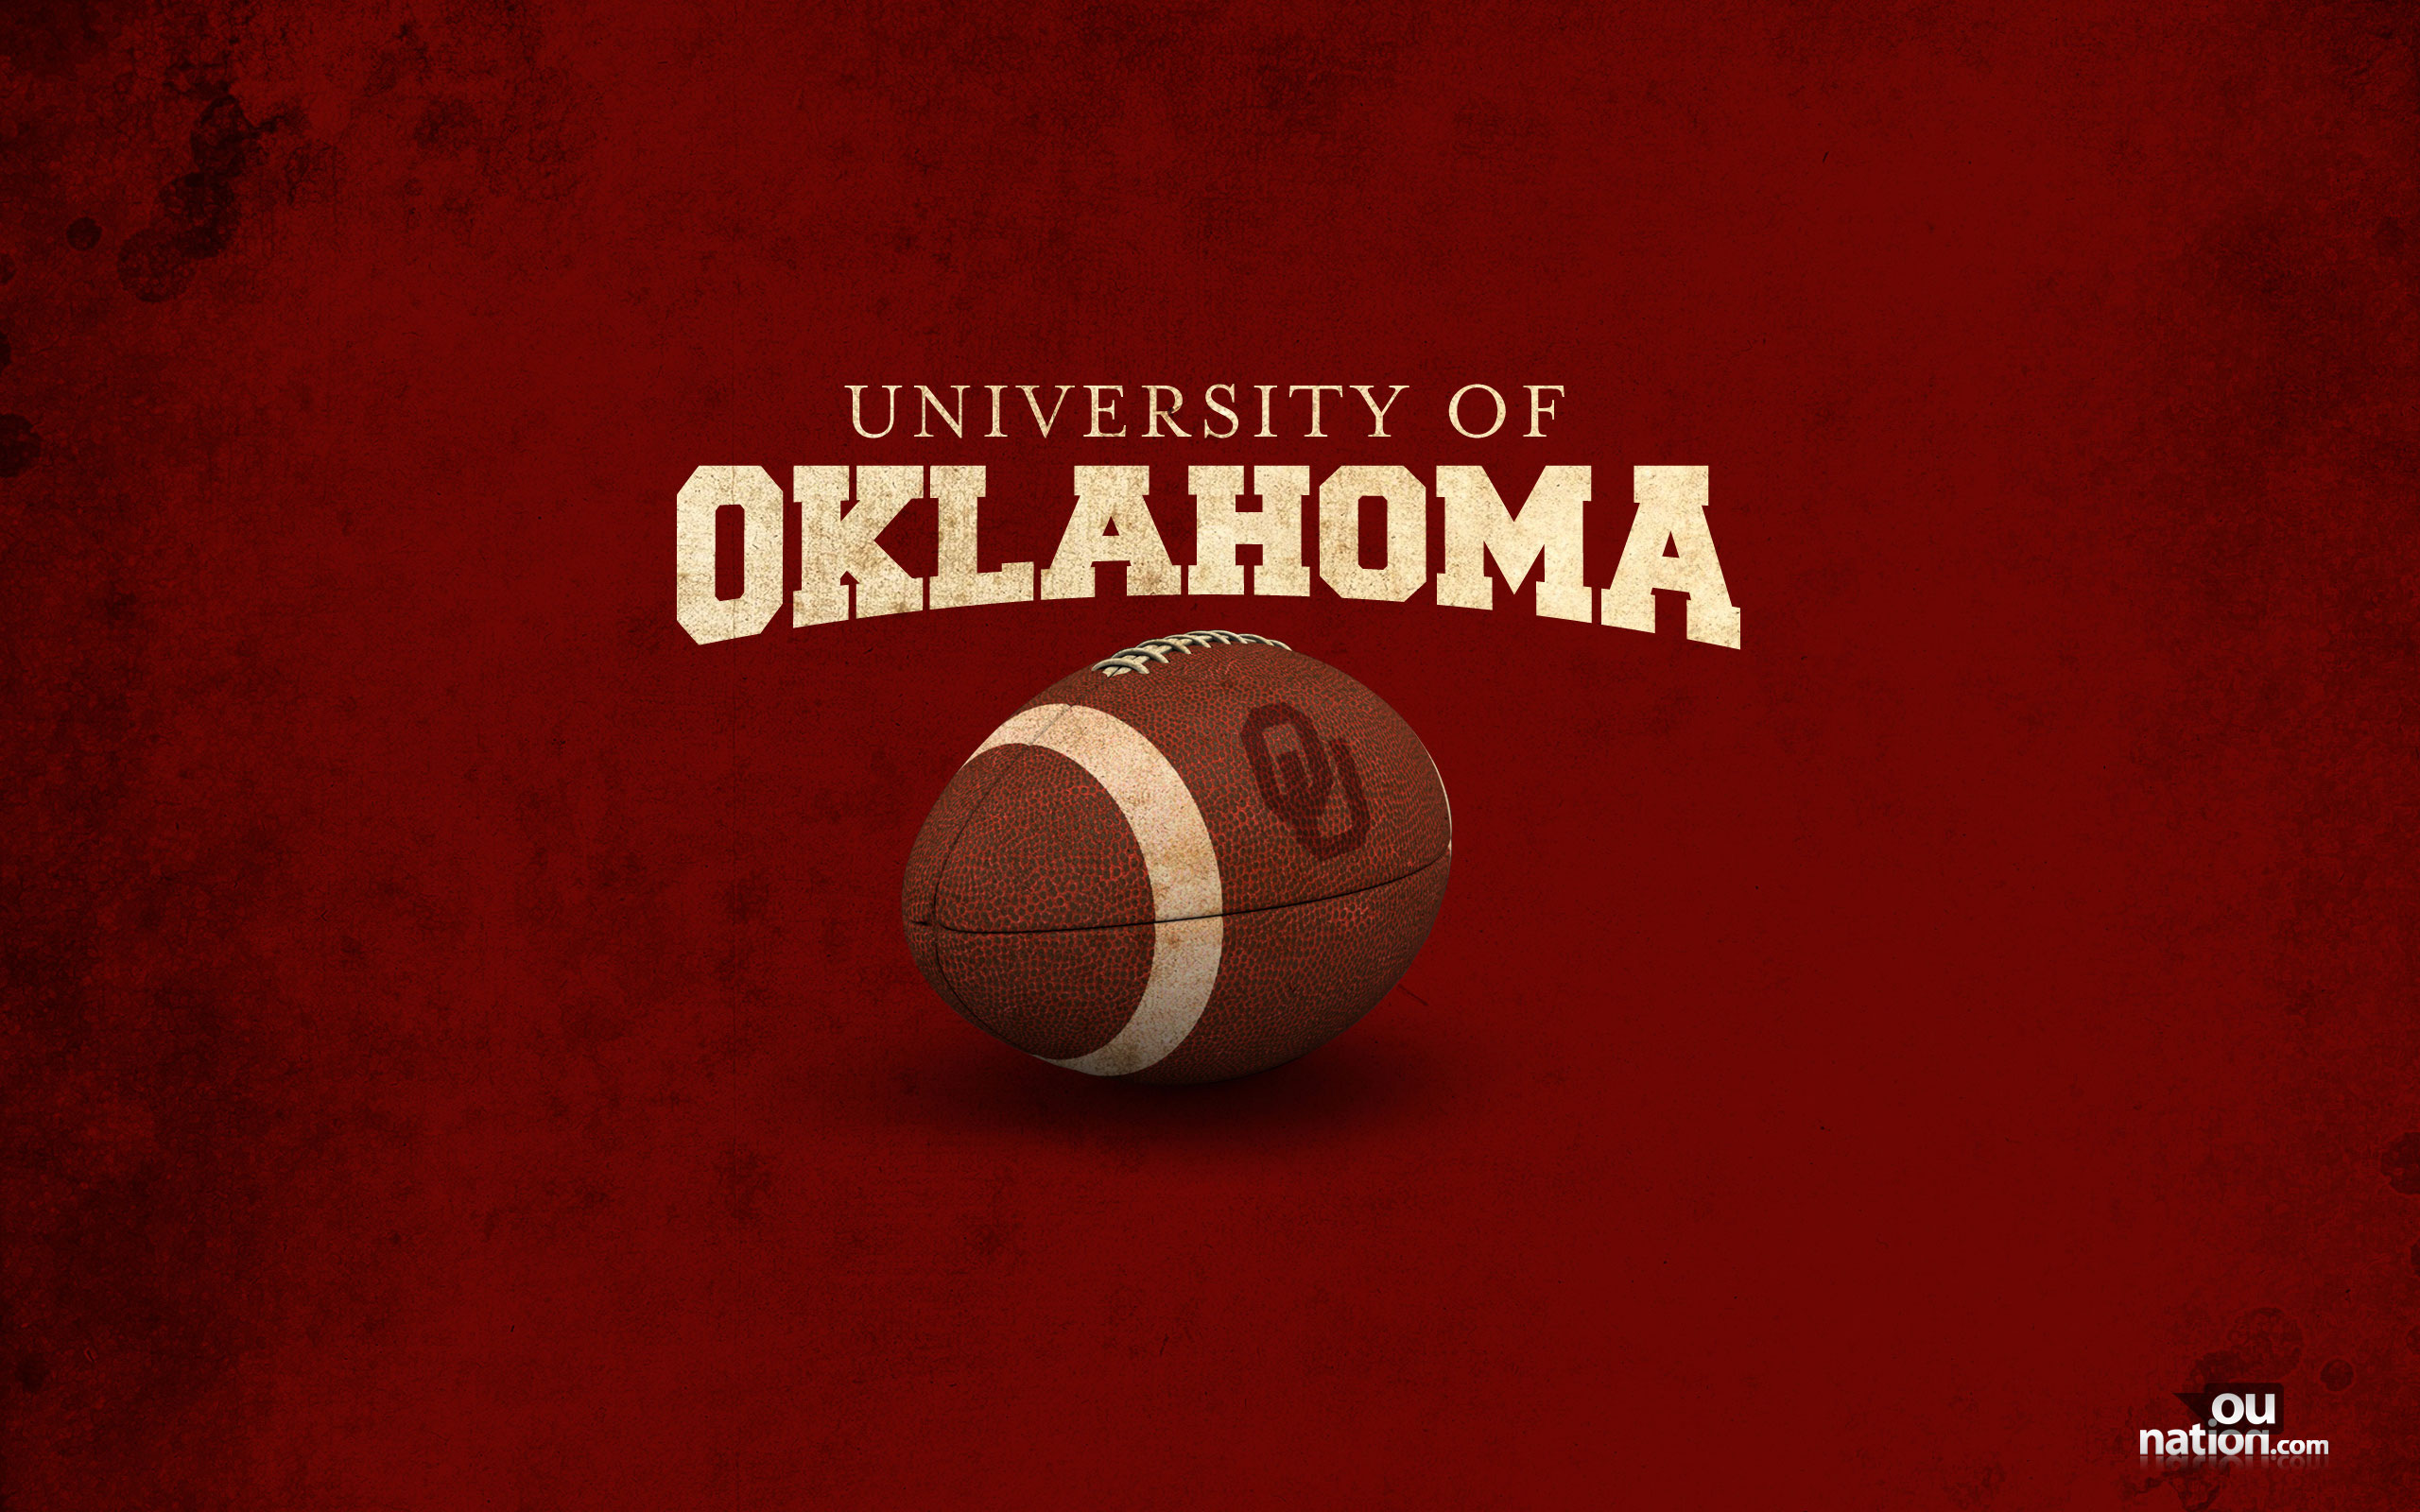 University Of Oklahoma Themed Wallpaper For